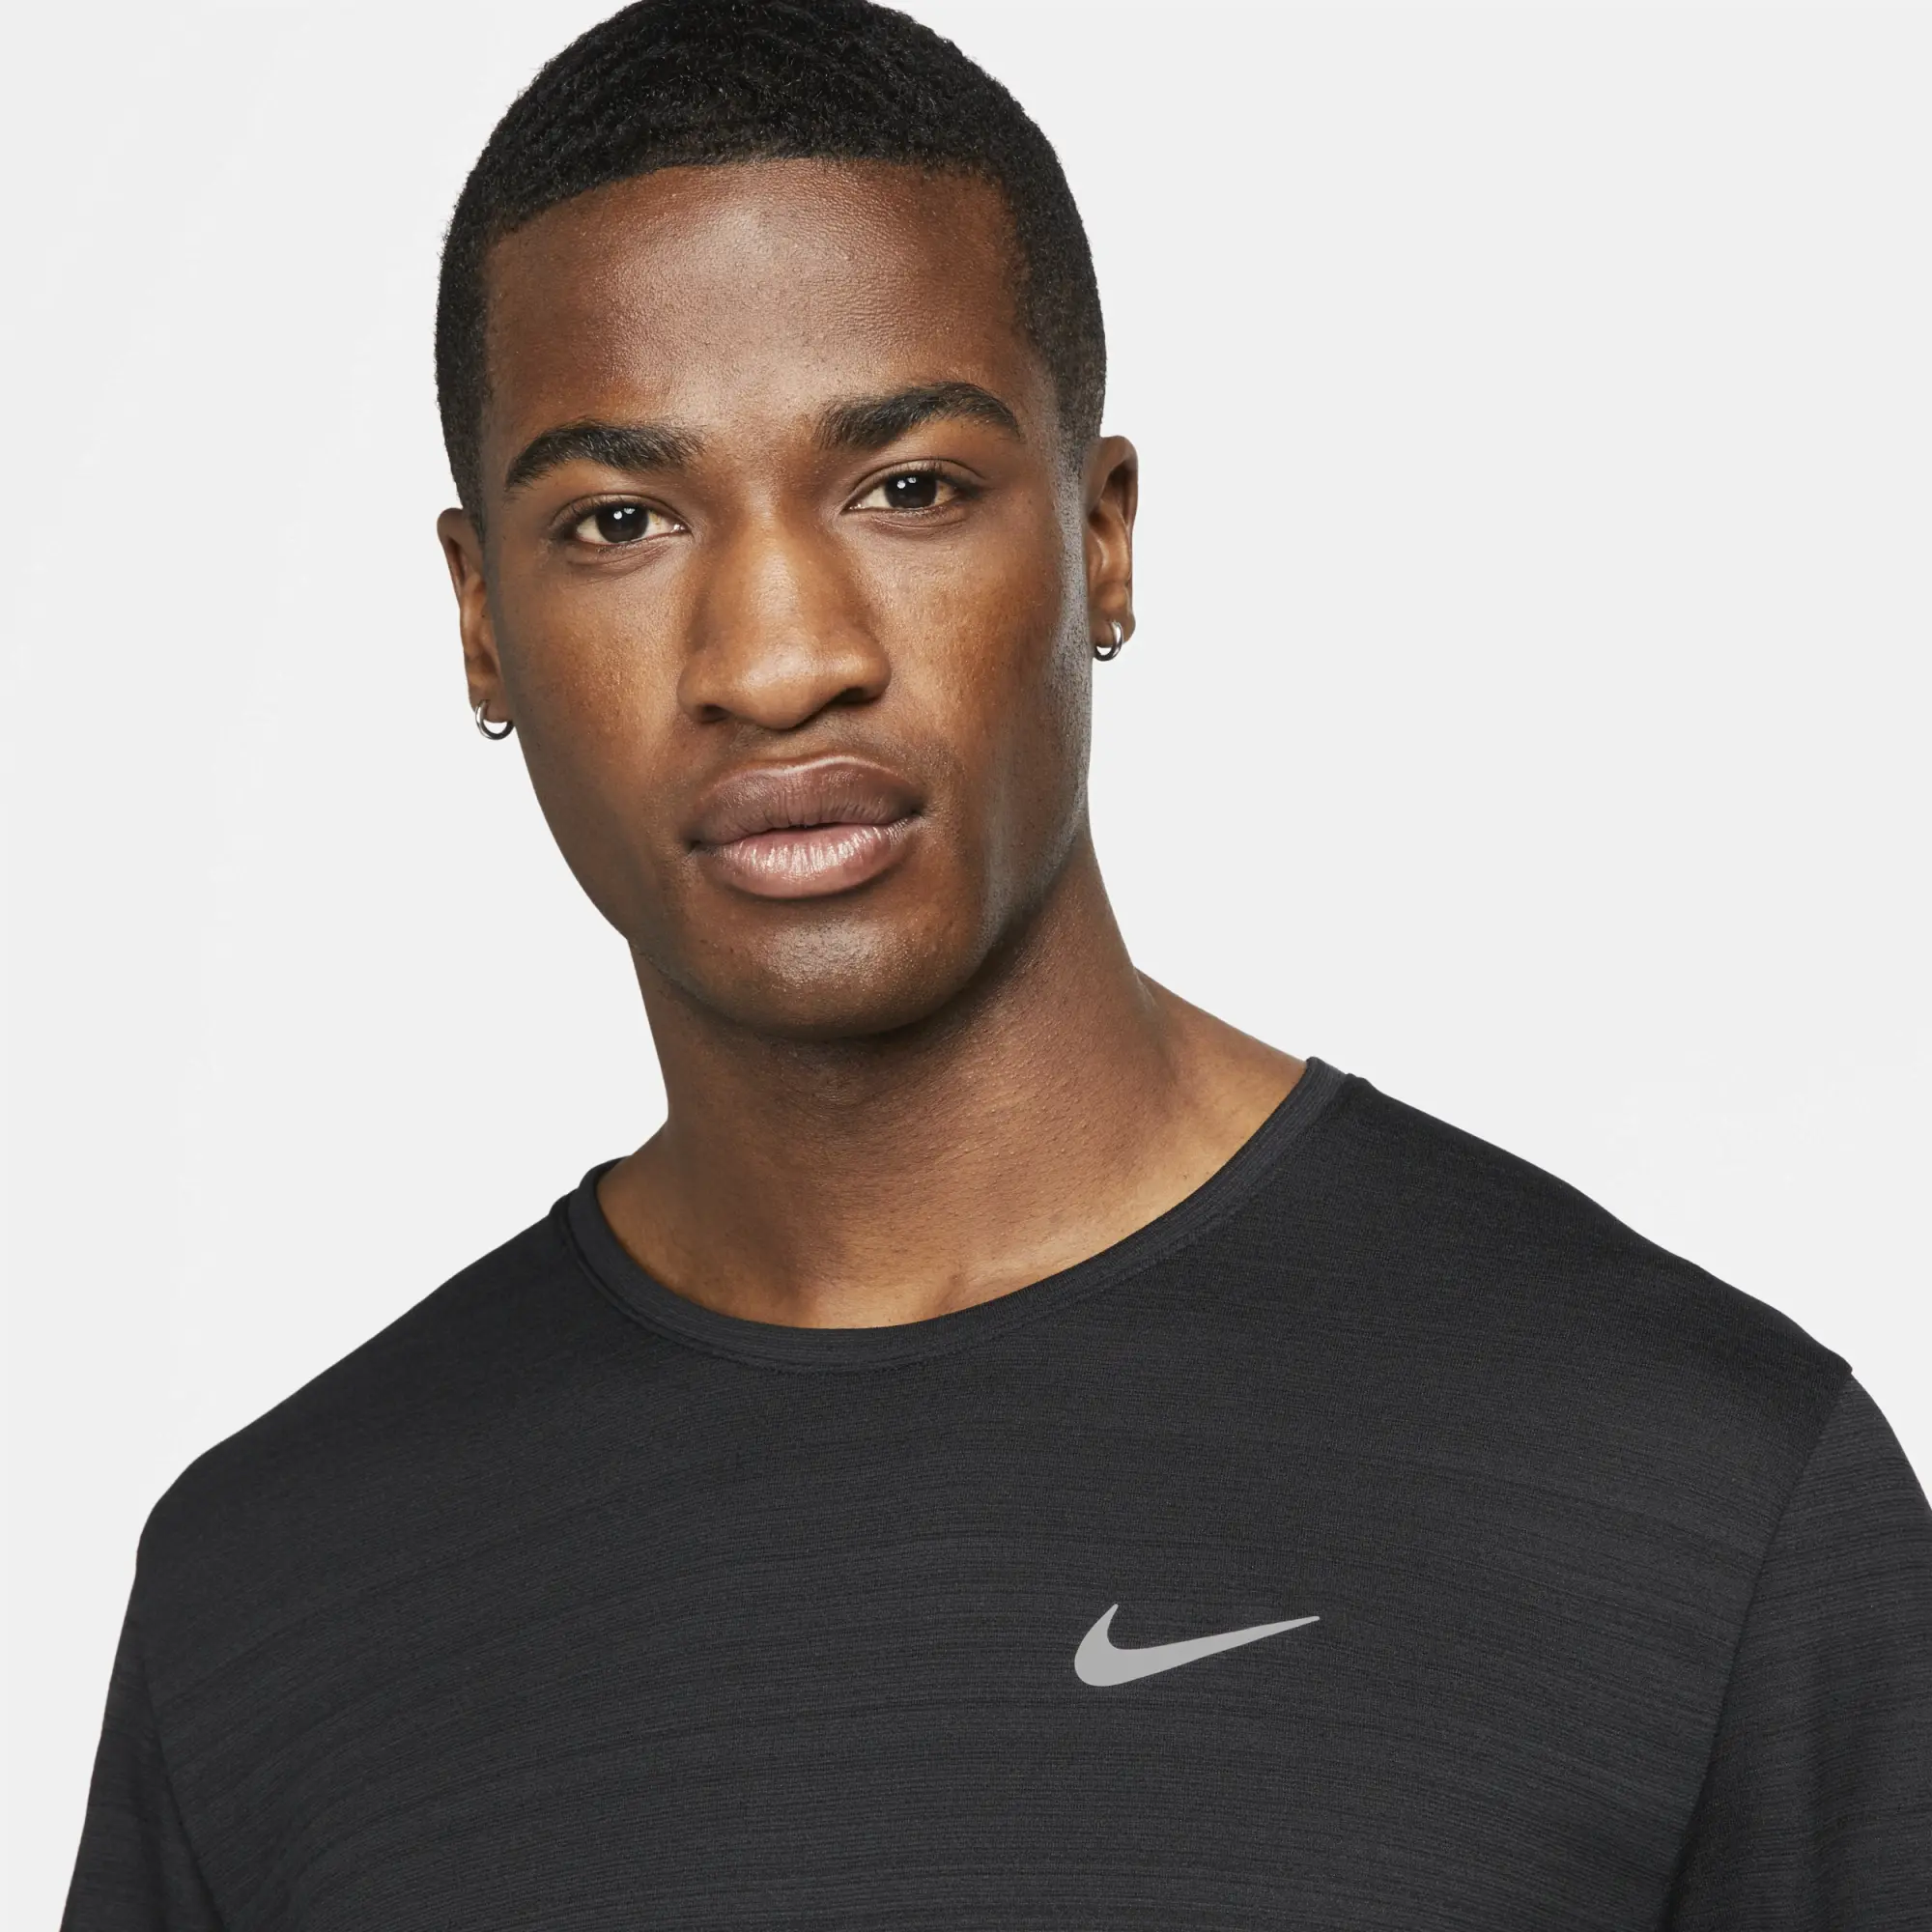 Nike Running Tall Miler Dri-Fit T-Shirt In Mint Green